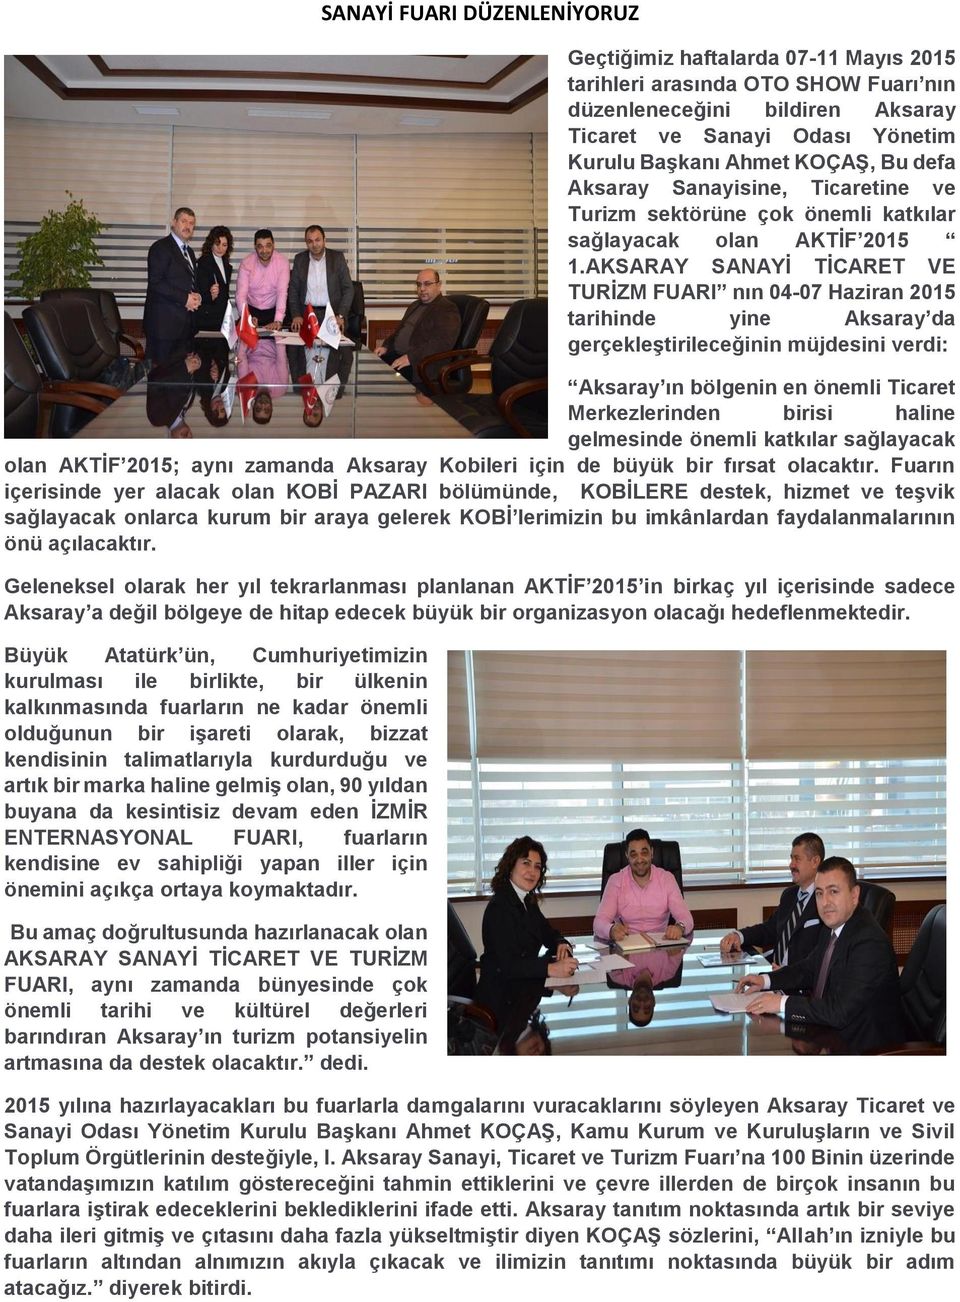 AKSARAY SANAYİ TİCARET VE TURİZM FUARI nın 04-07 Haziran 2015 tarihinde yine Aksaray da gerçekleştirileceğinin müjdesini verdi: Aksaray ın bölgenin en önemli Ticaret Merkezlerinden birisi haline